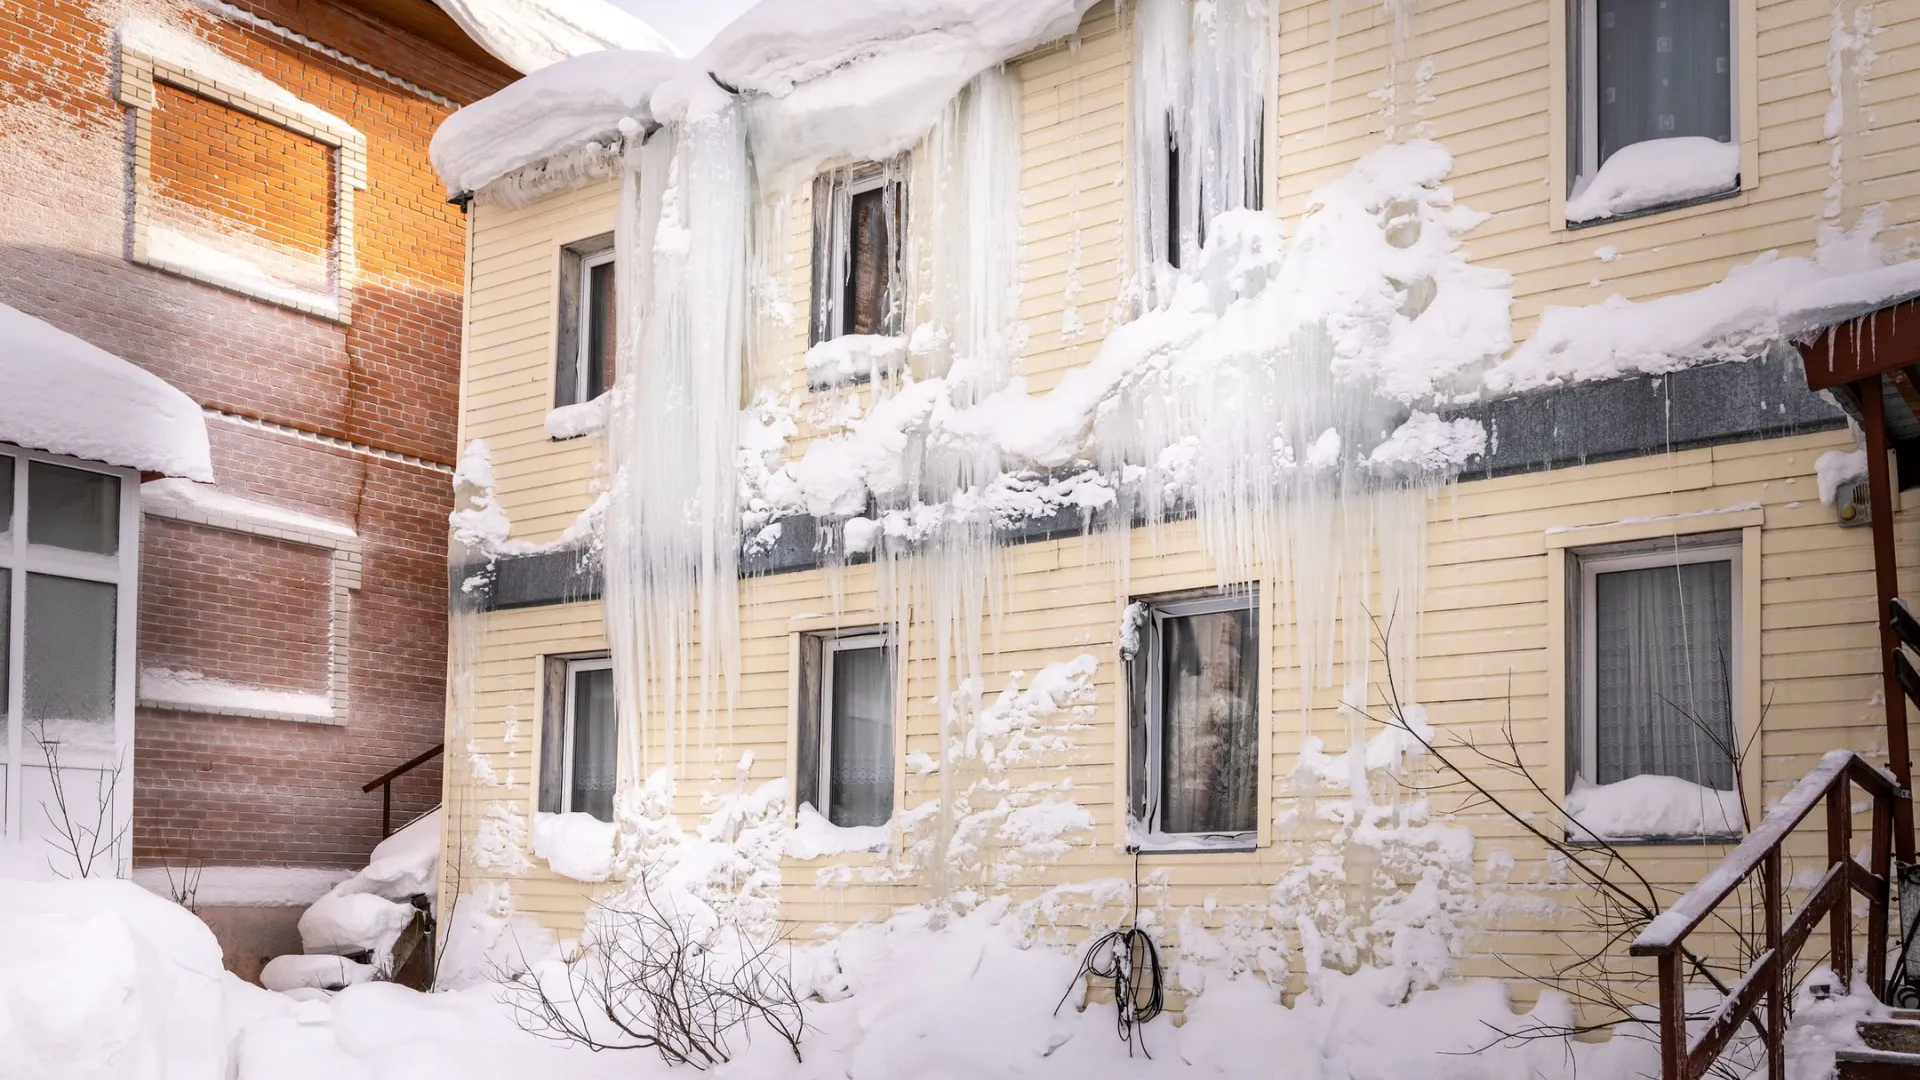 Падение сосулек и снега с крыши может нанести значительный ущерб здоровью людей. Фото: Федор Воронов / «Ямал-Медиа»